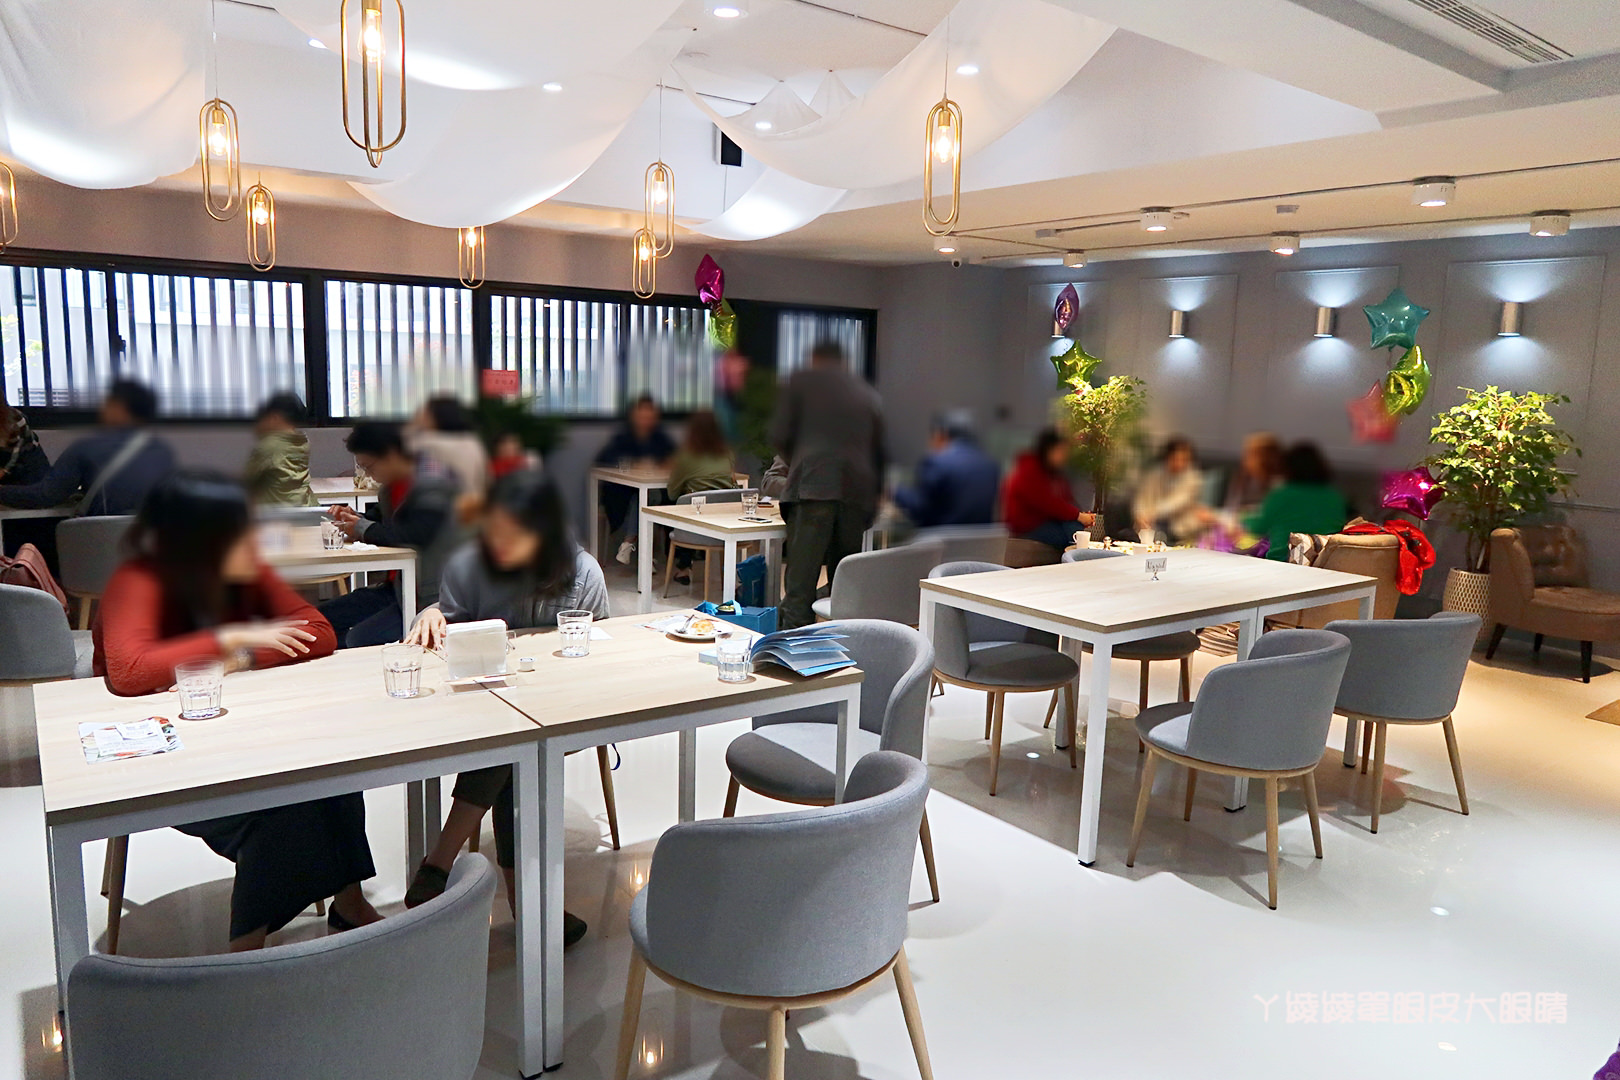 竹北義式餐廳Paleo Cafe，新竹美食餐廳也來混搭風(已歇業)